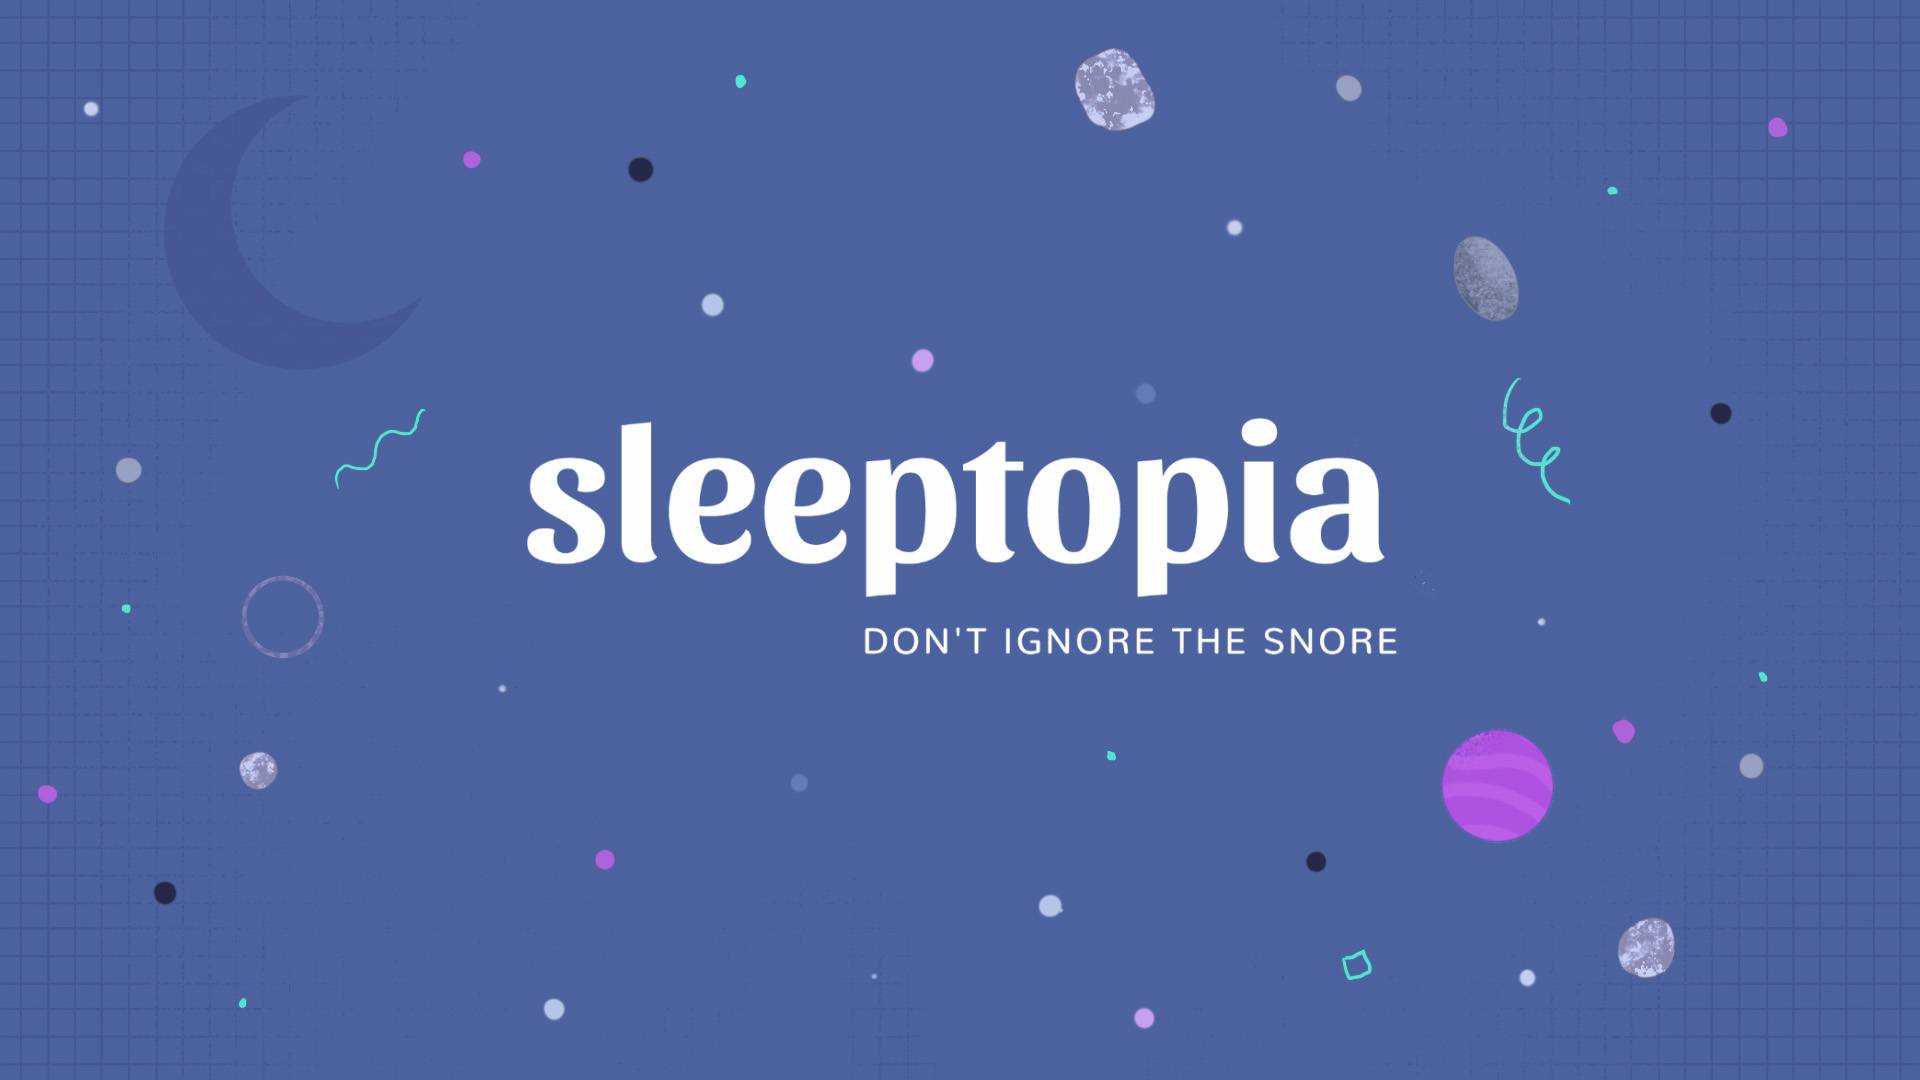 About Sleeptopia - Sleeptopia